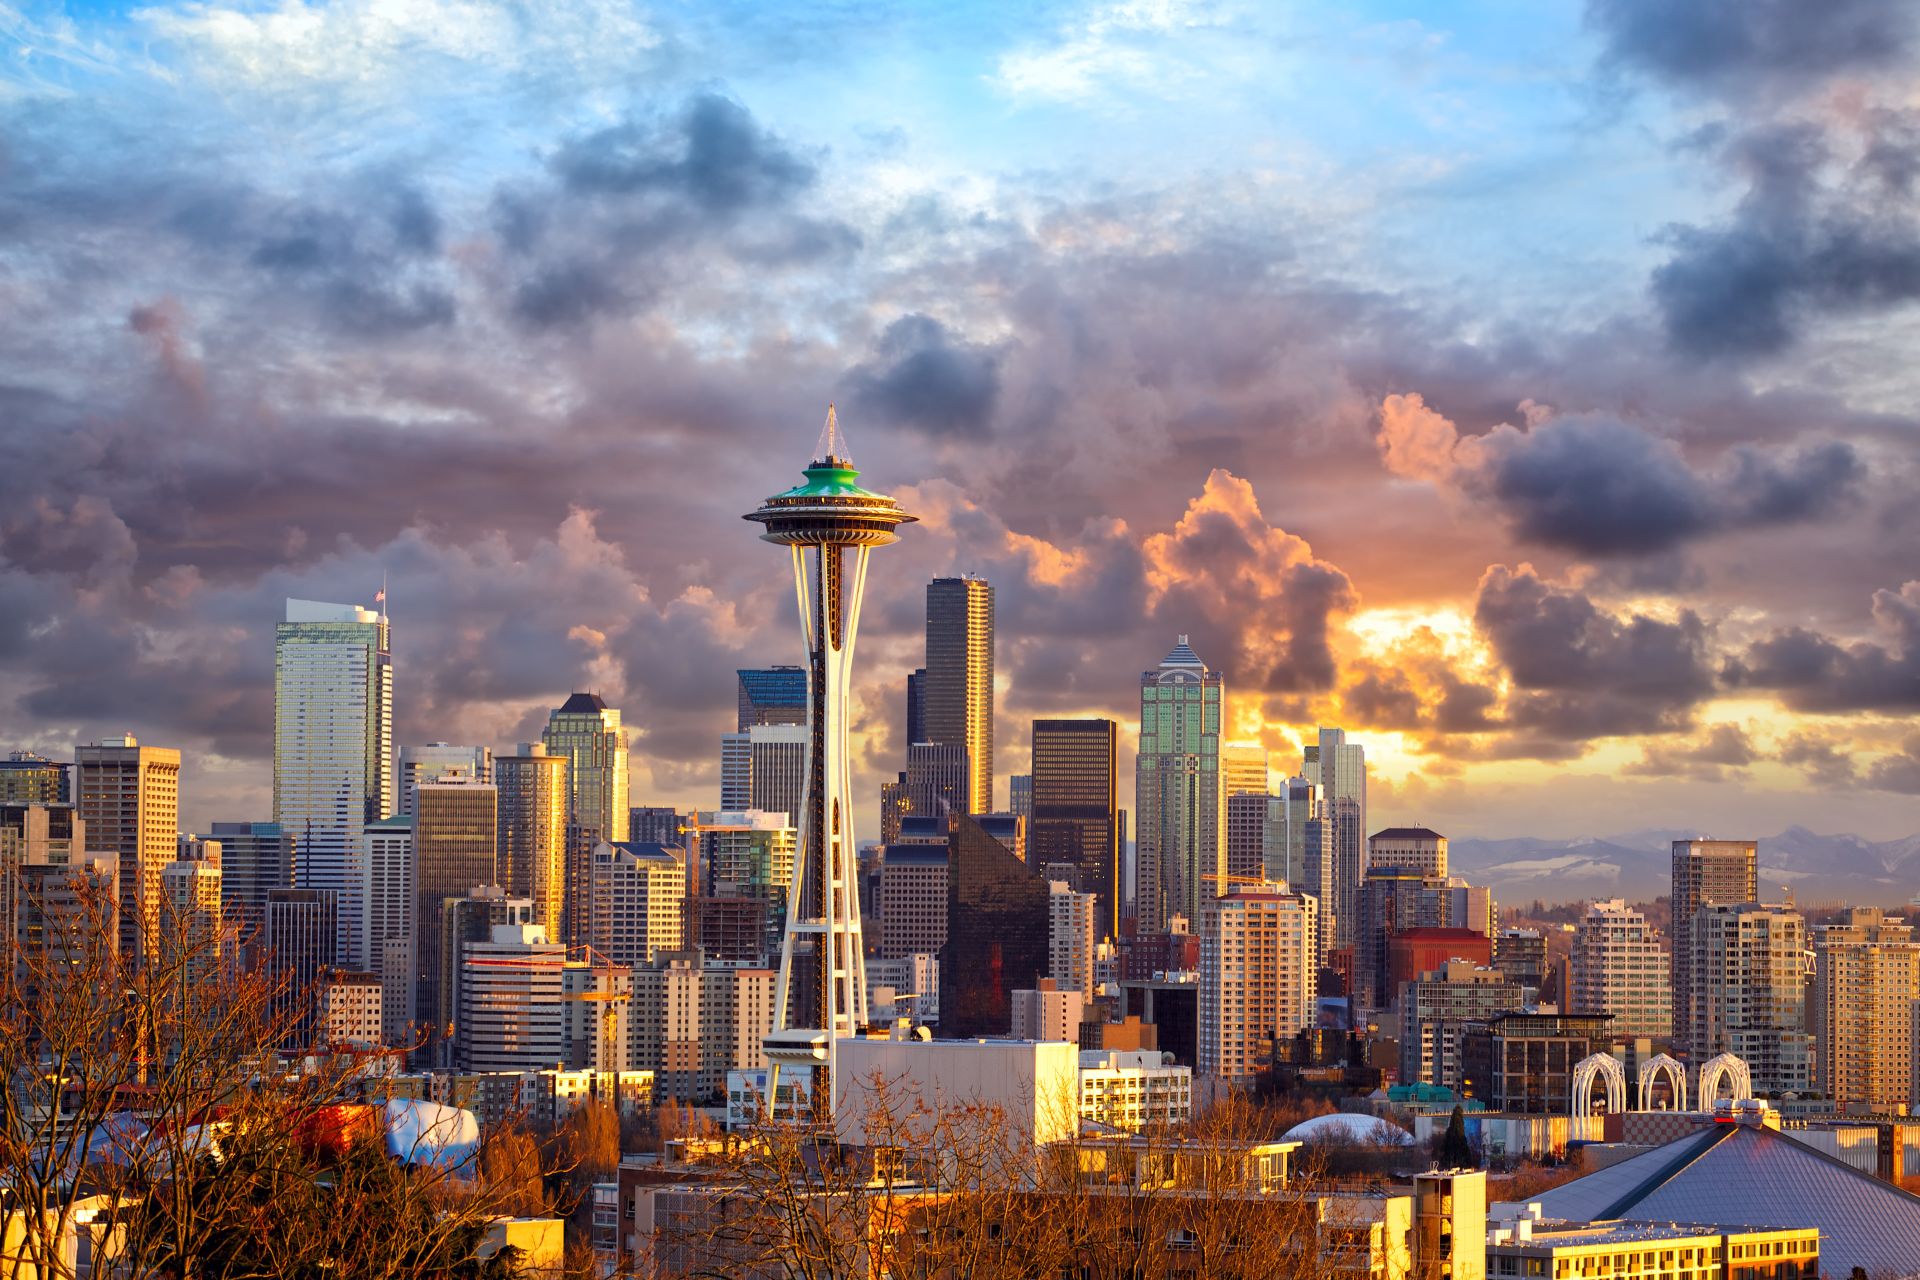 Skyline Seattle at sunset, WA, USA.